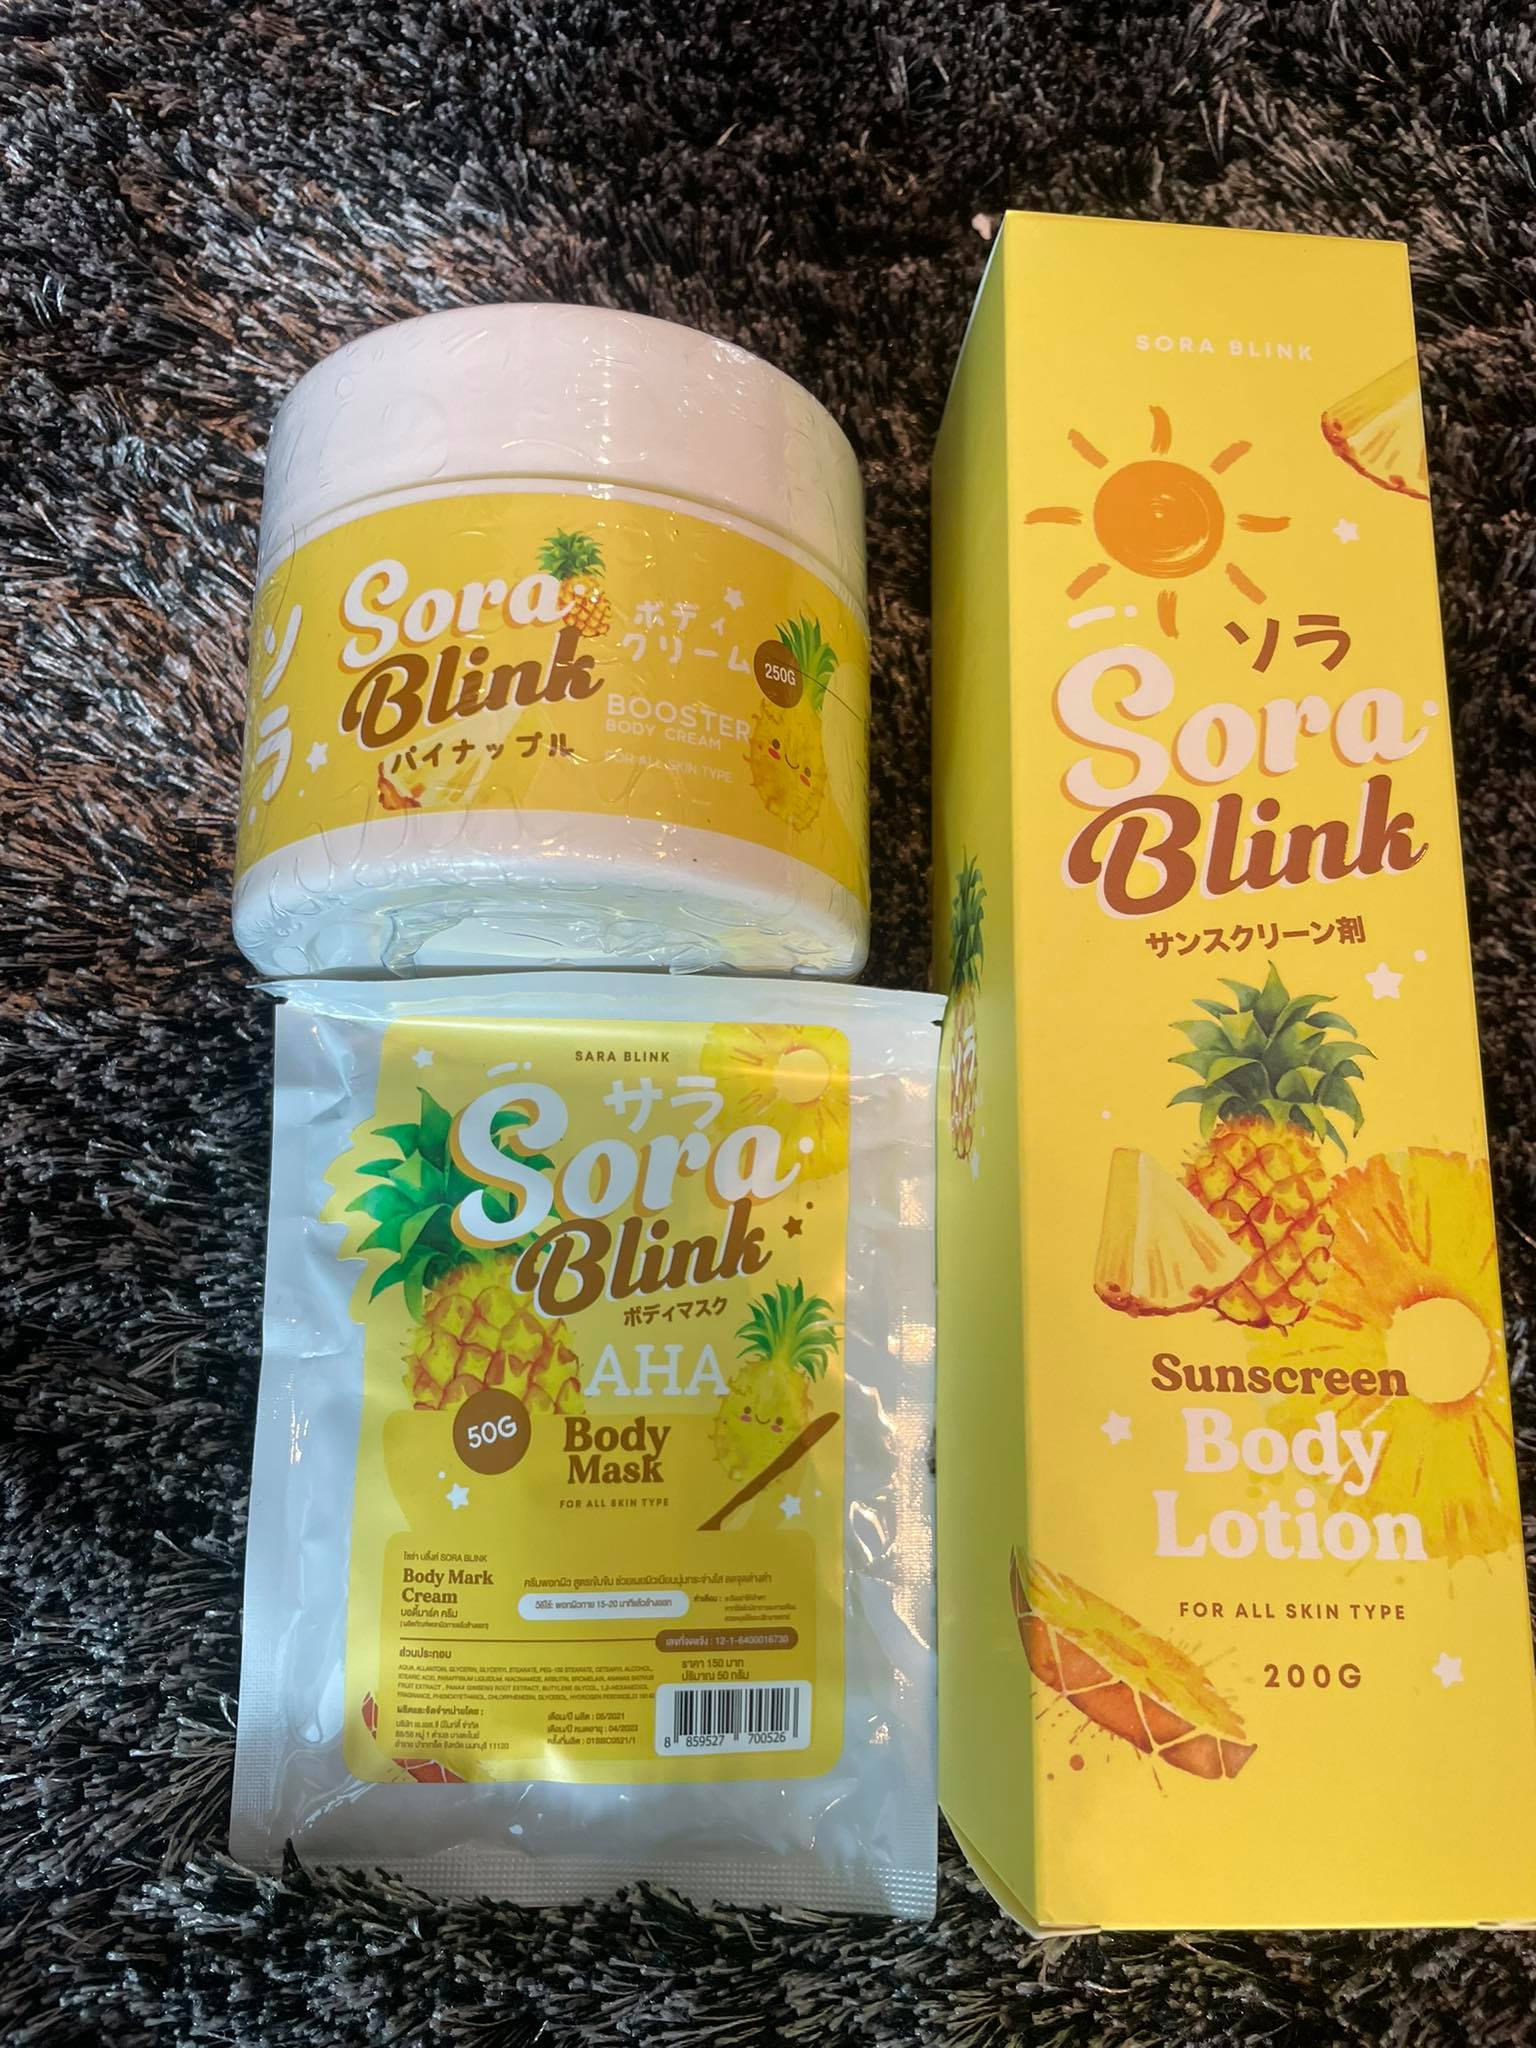 Sora Blink Body Mask for all skin type, Sunscreen Body Lotion, Sora Blink Booster Body Cream